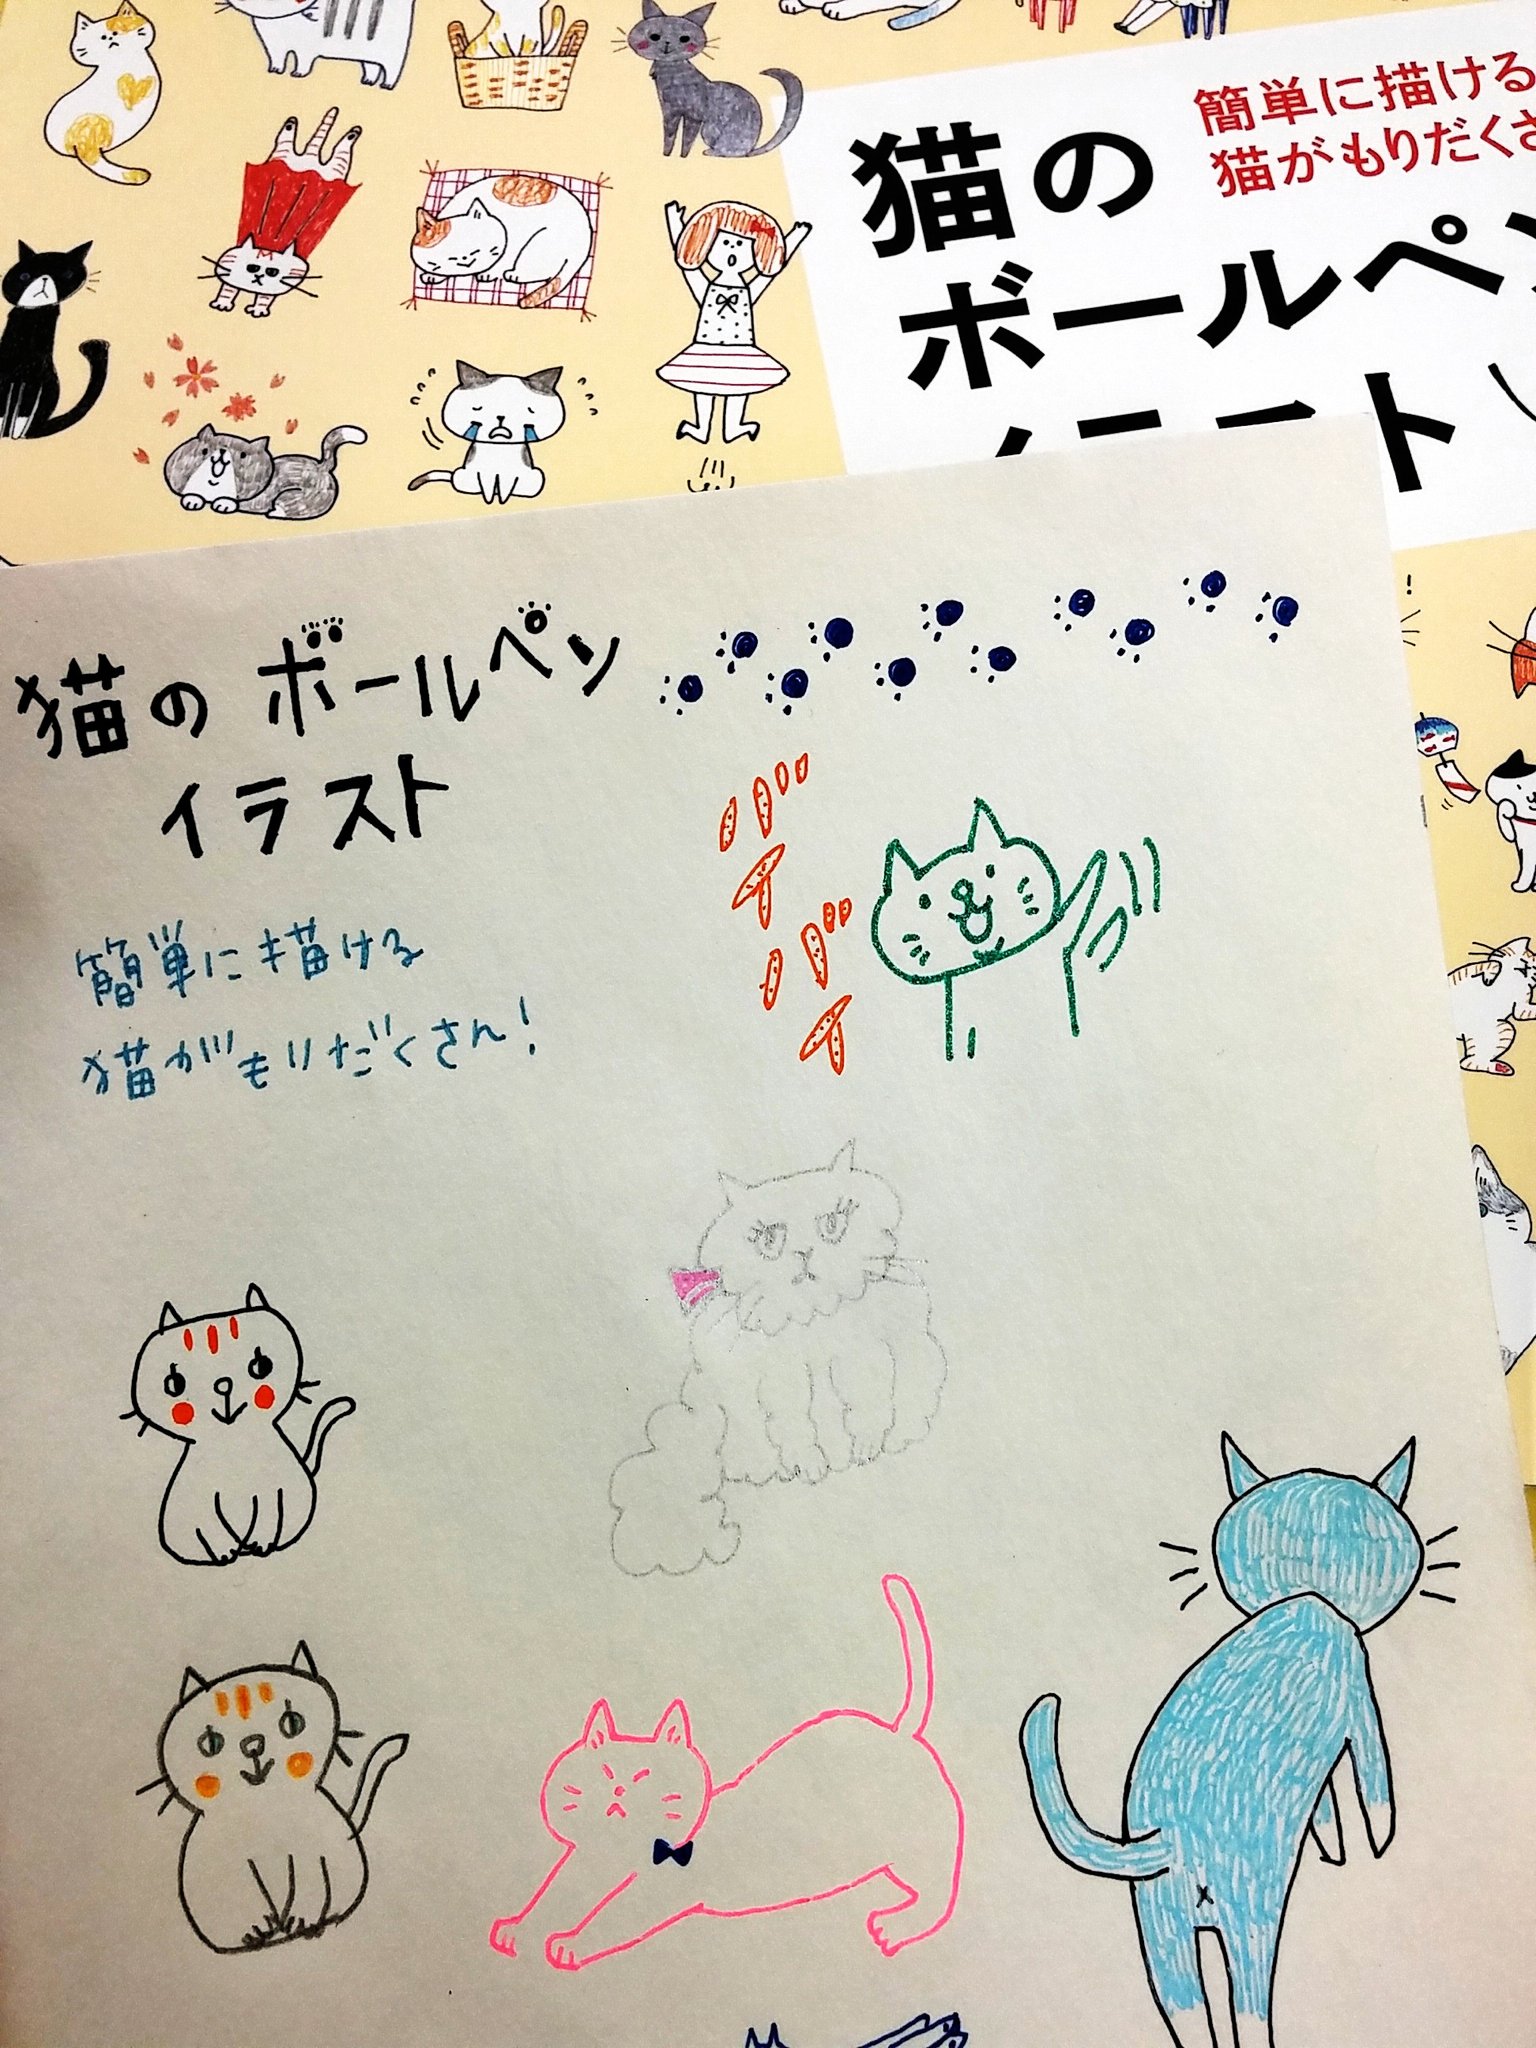 تويتر トゥールズ大阪梅田店 على تويتر 猫 犬のボールペンイラスト 両方お取り扱いしております ェ U ェ U バリエーション豊かです 色鉛筆で描いてみても雰囲気変わっていいですよ T Co Yapxj2qygk